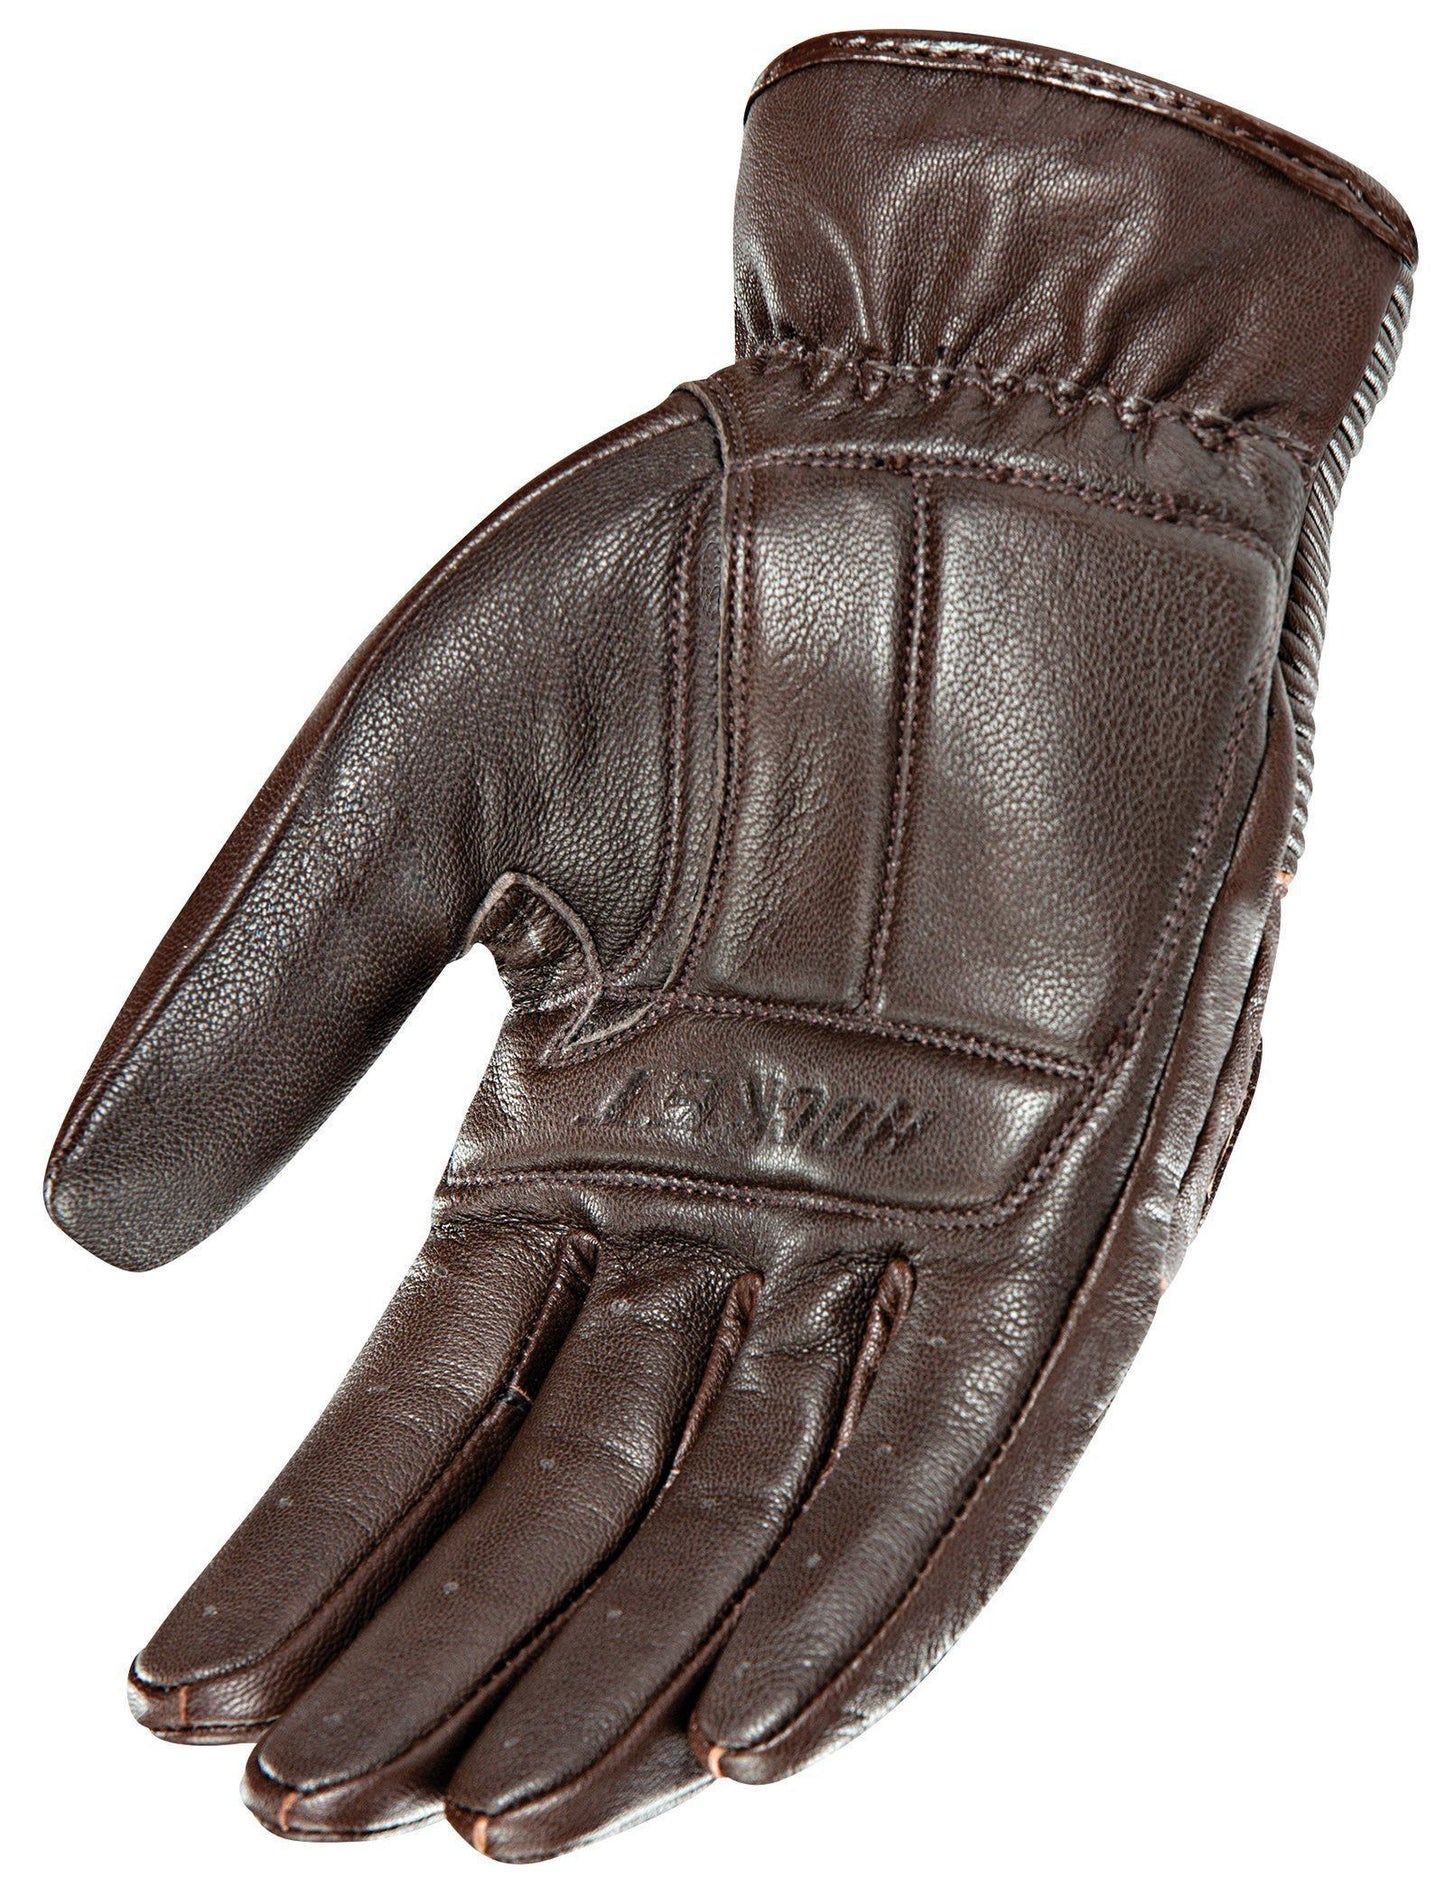 Joe Rocket Cafe Racer Mens Brown Leather Gloves